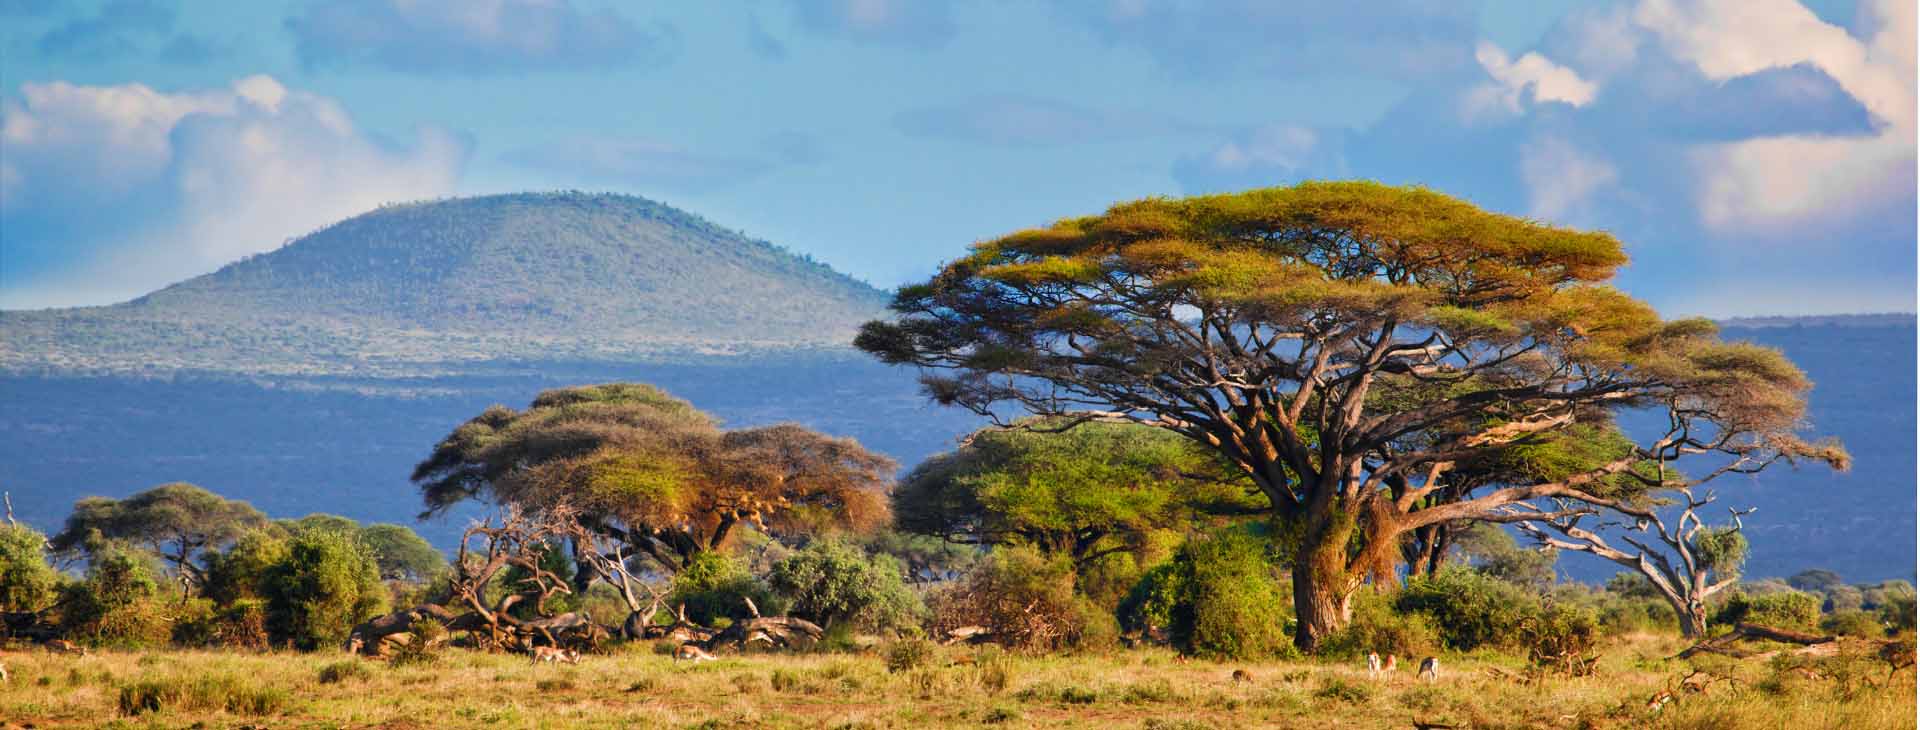 Kenia - Nocne łowy i przygoda w Samburu 14 dni